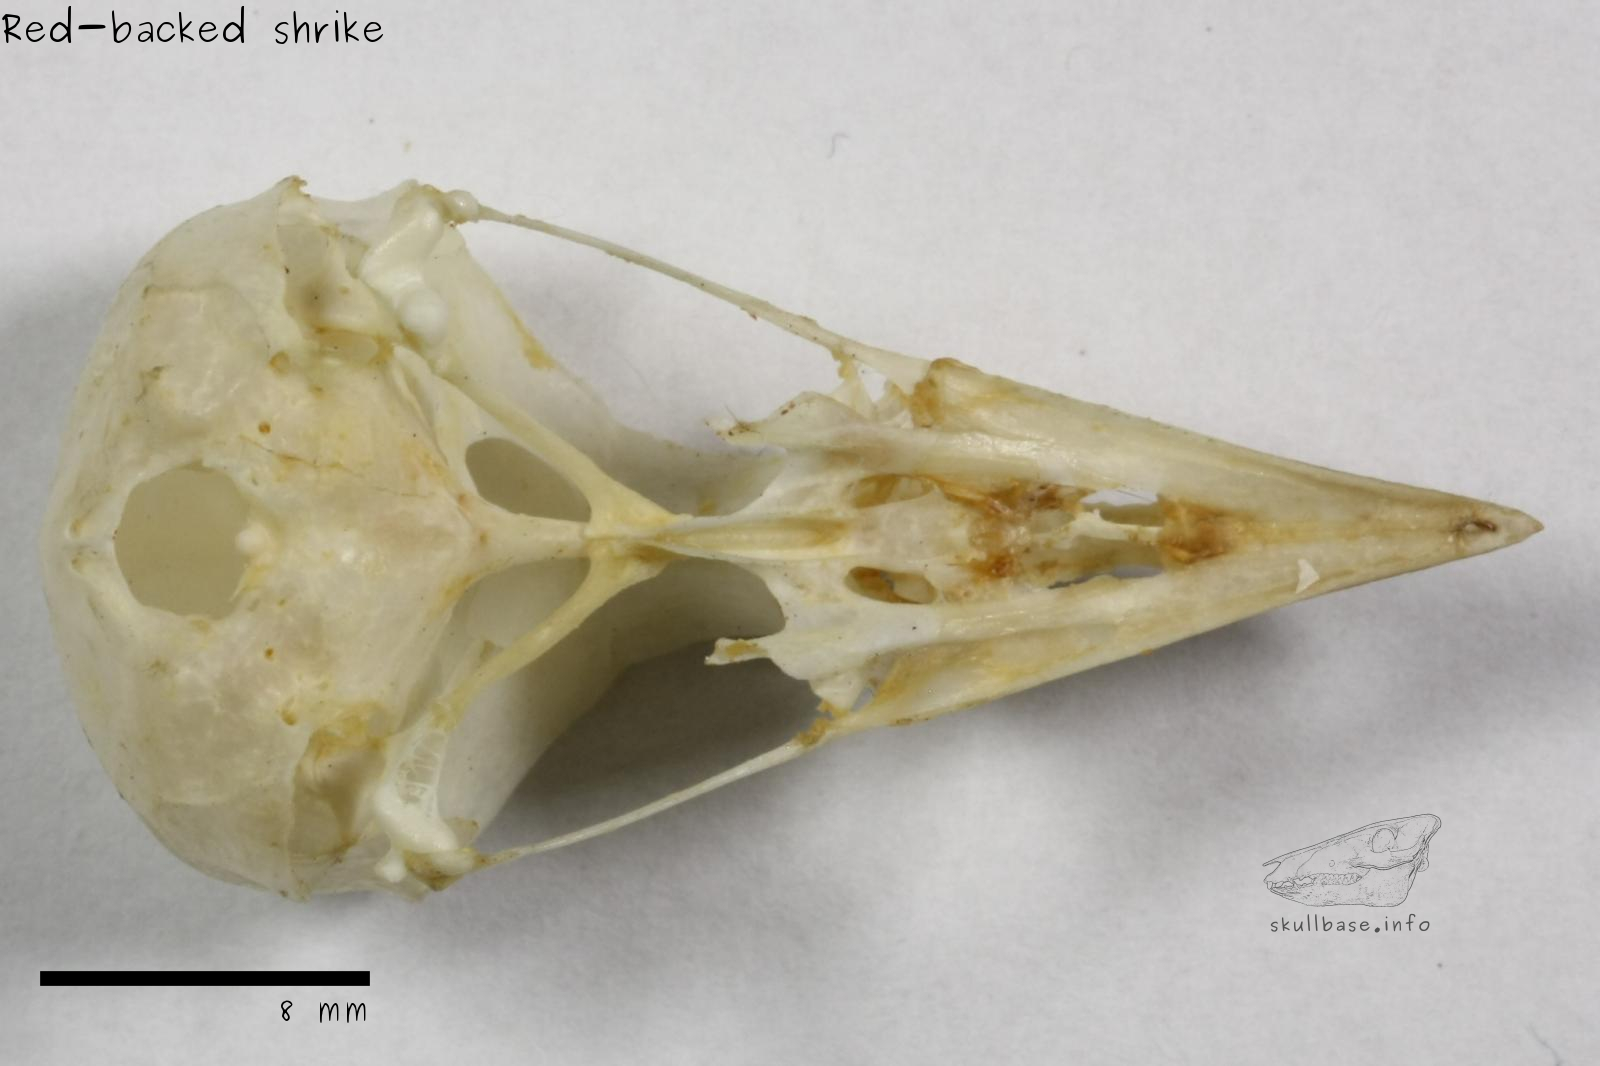 Red-backed shrike (Lanius collurio) skull ventral view